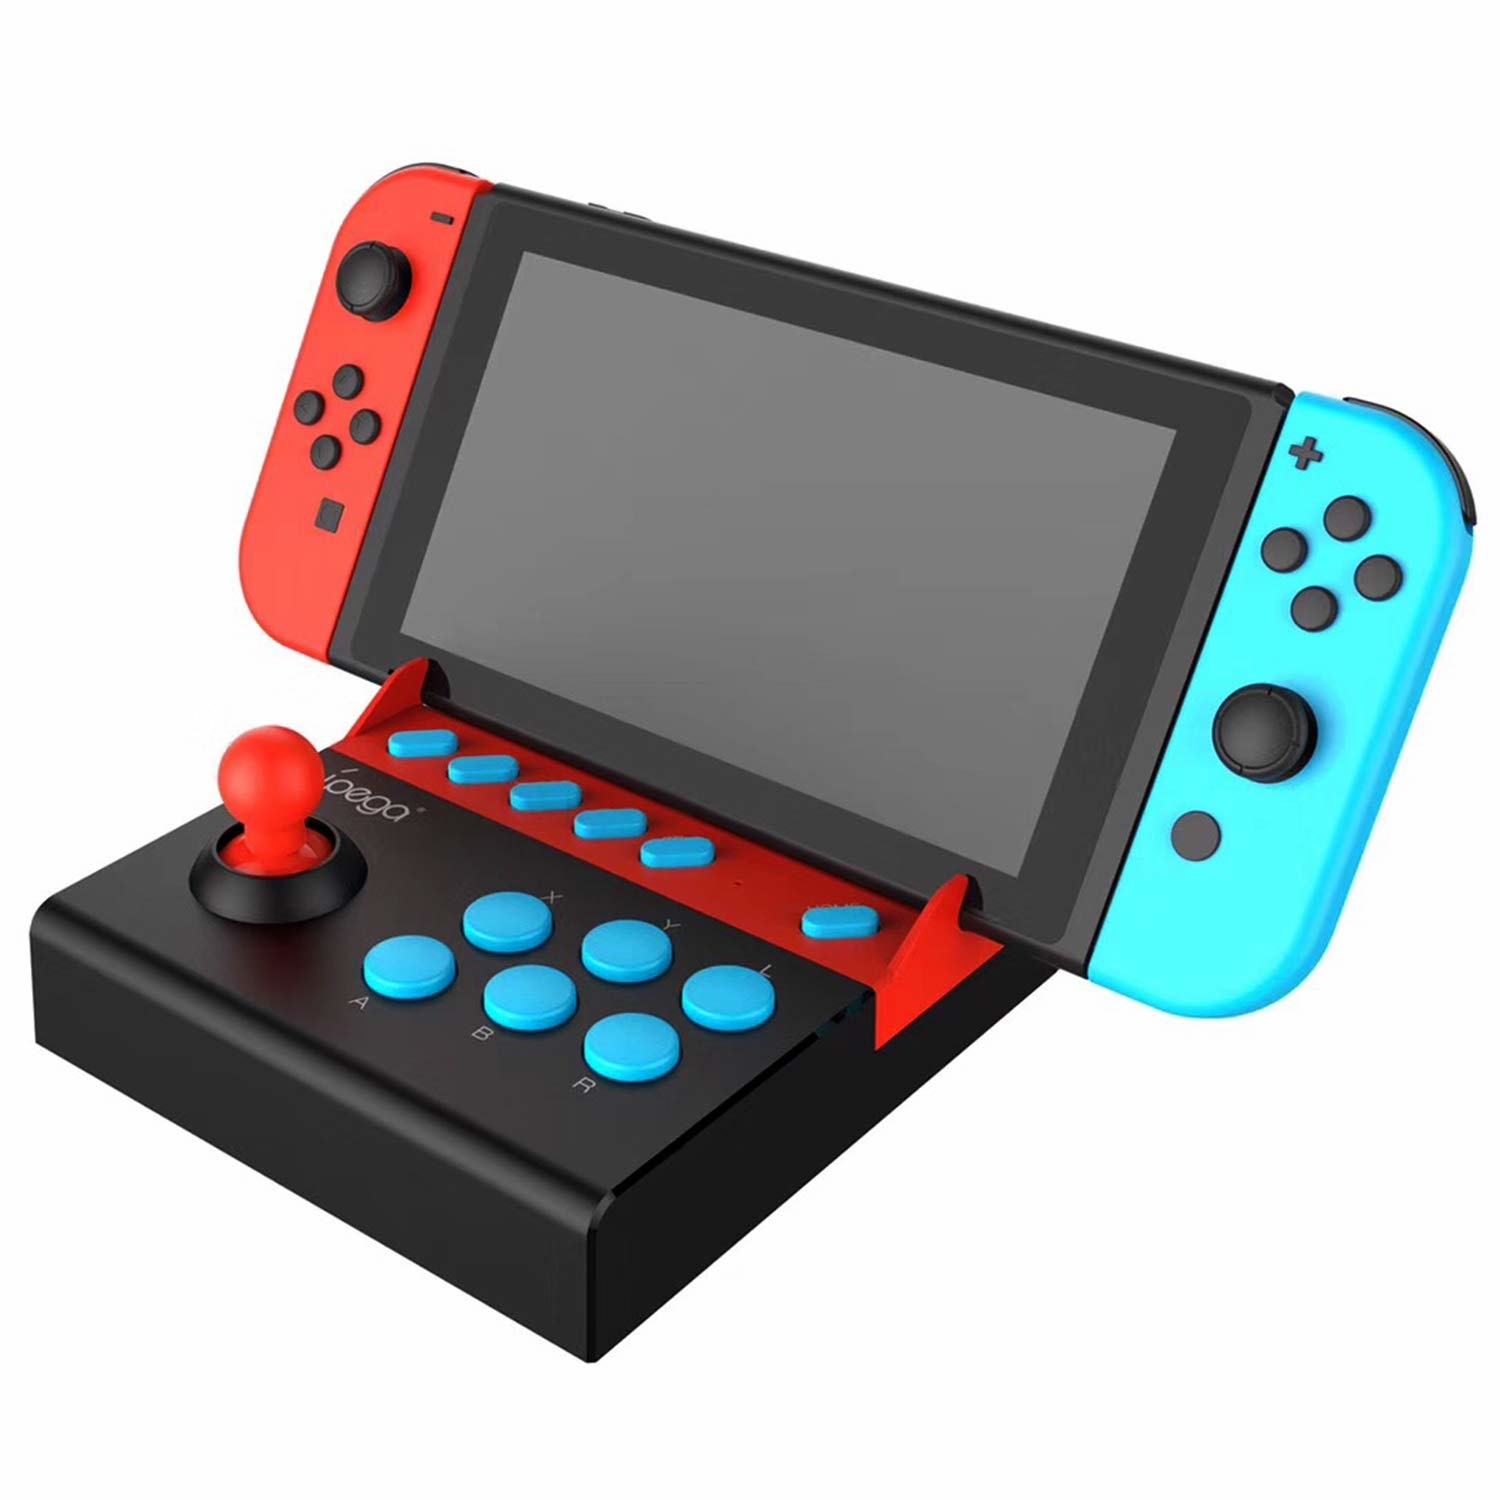 Стик контроллера. Игровой джойстик Нинтендо свитч. IPEGA PG-9136 Arcade Joystick for Nintendo Switch Single. Джойстик консоль Nintendo Switch. Планшет Нинтендо свитч игровой.